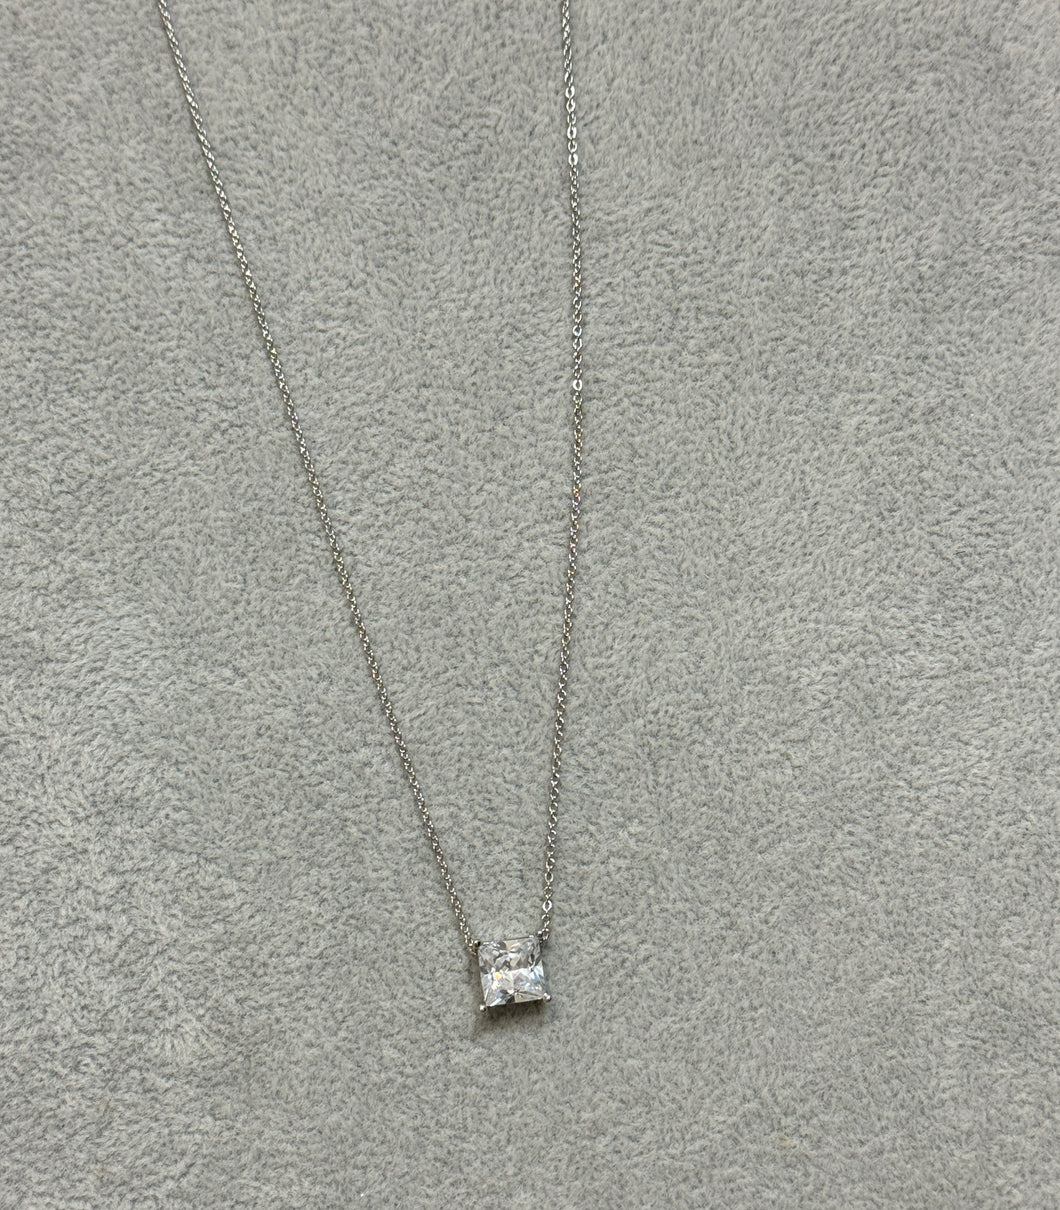 Princess Diamond Silver Necklace